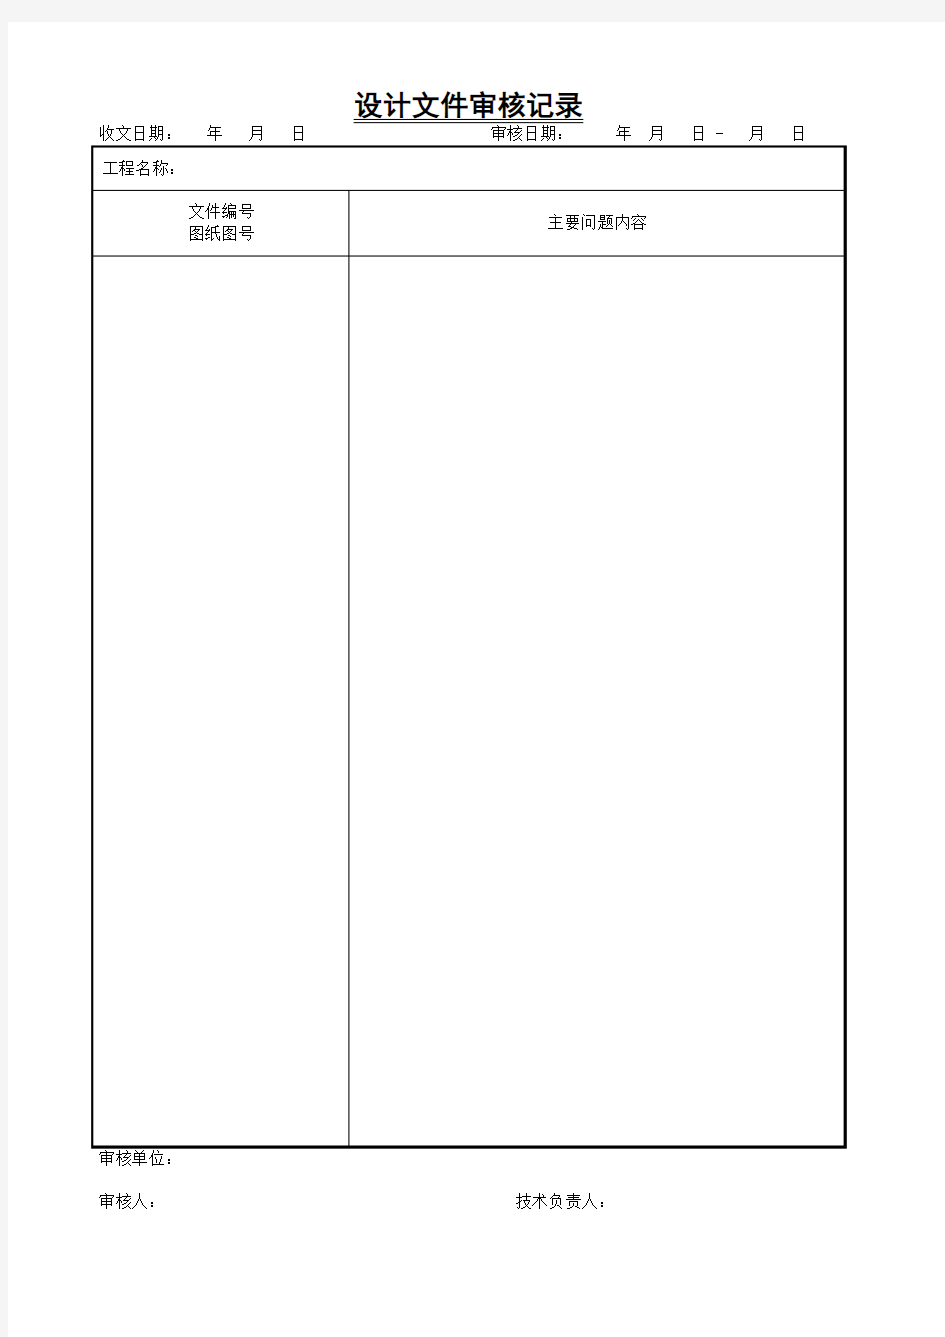 设计文件审核记录表(空表)